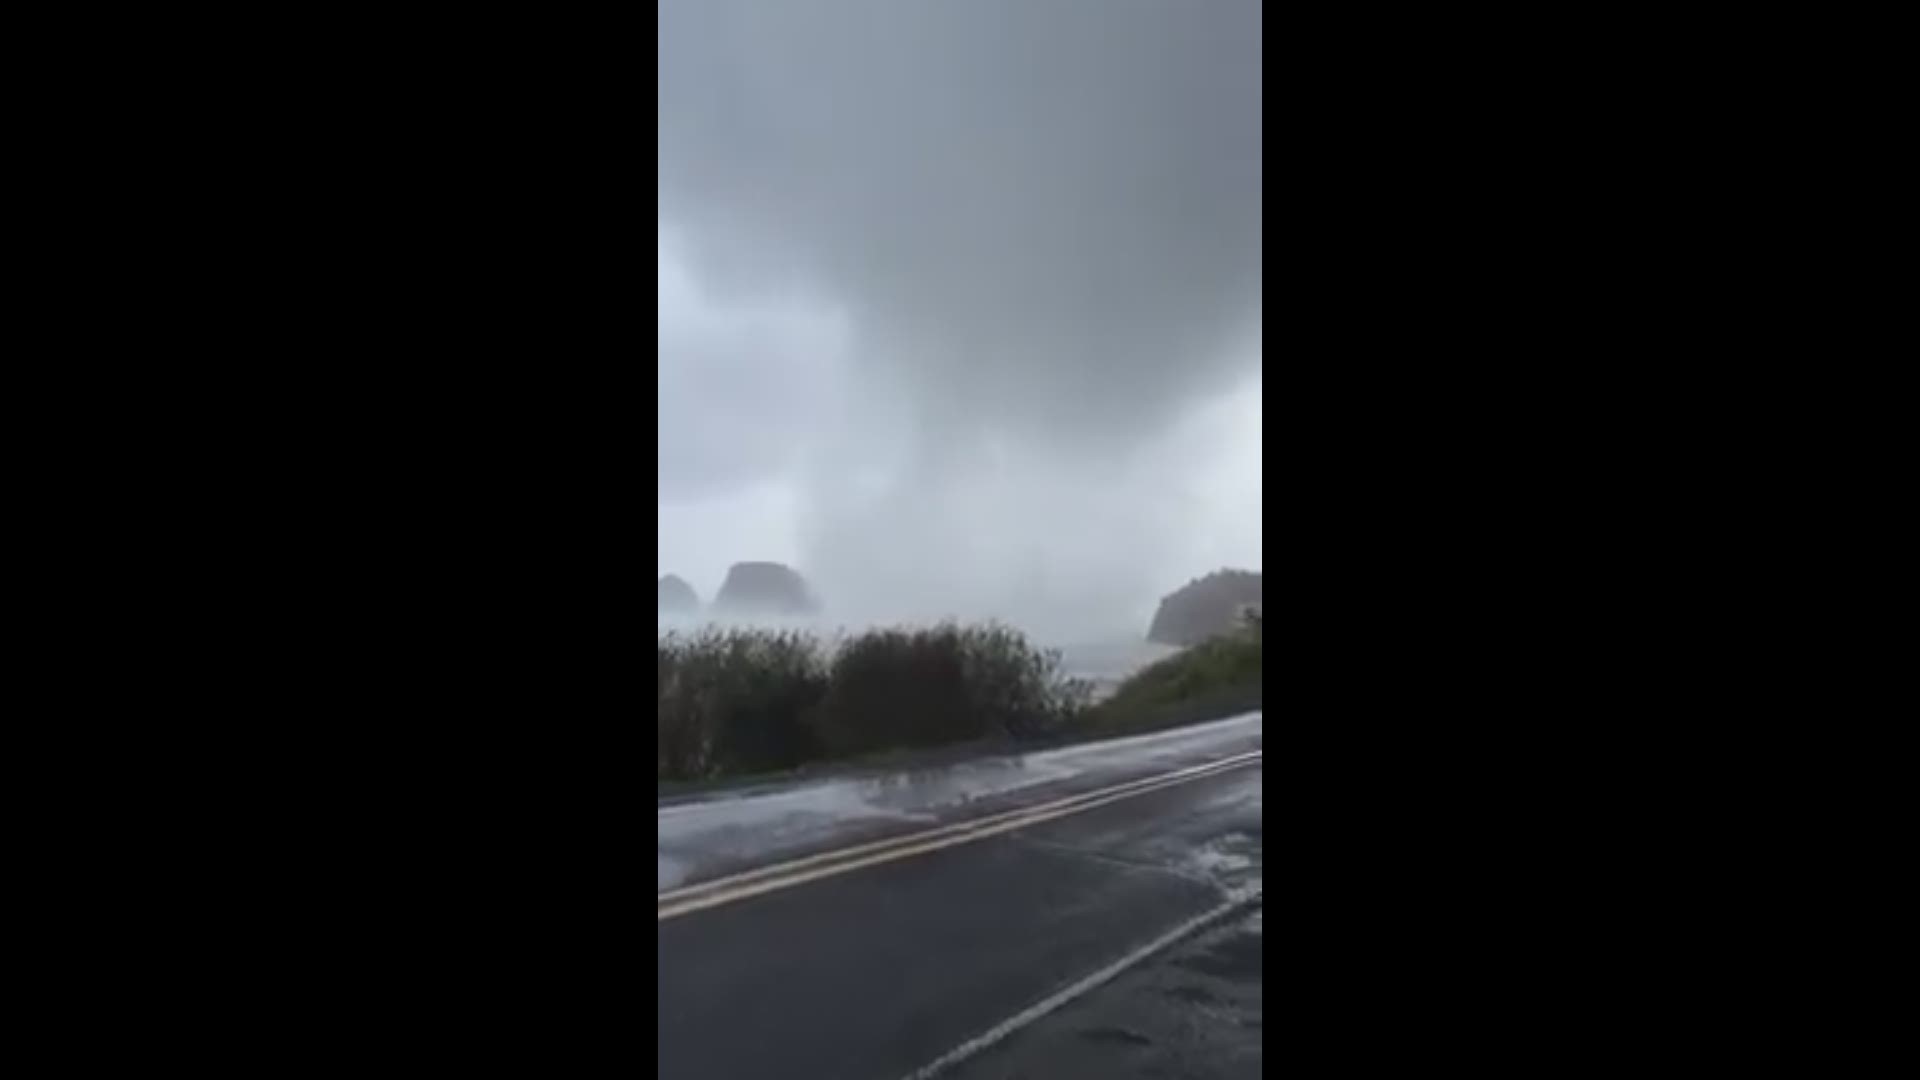 Second tornado in Oceanside